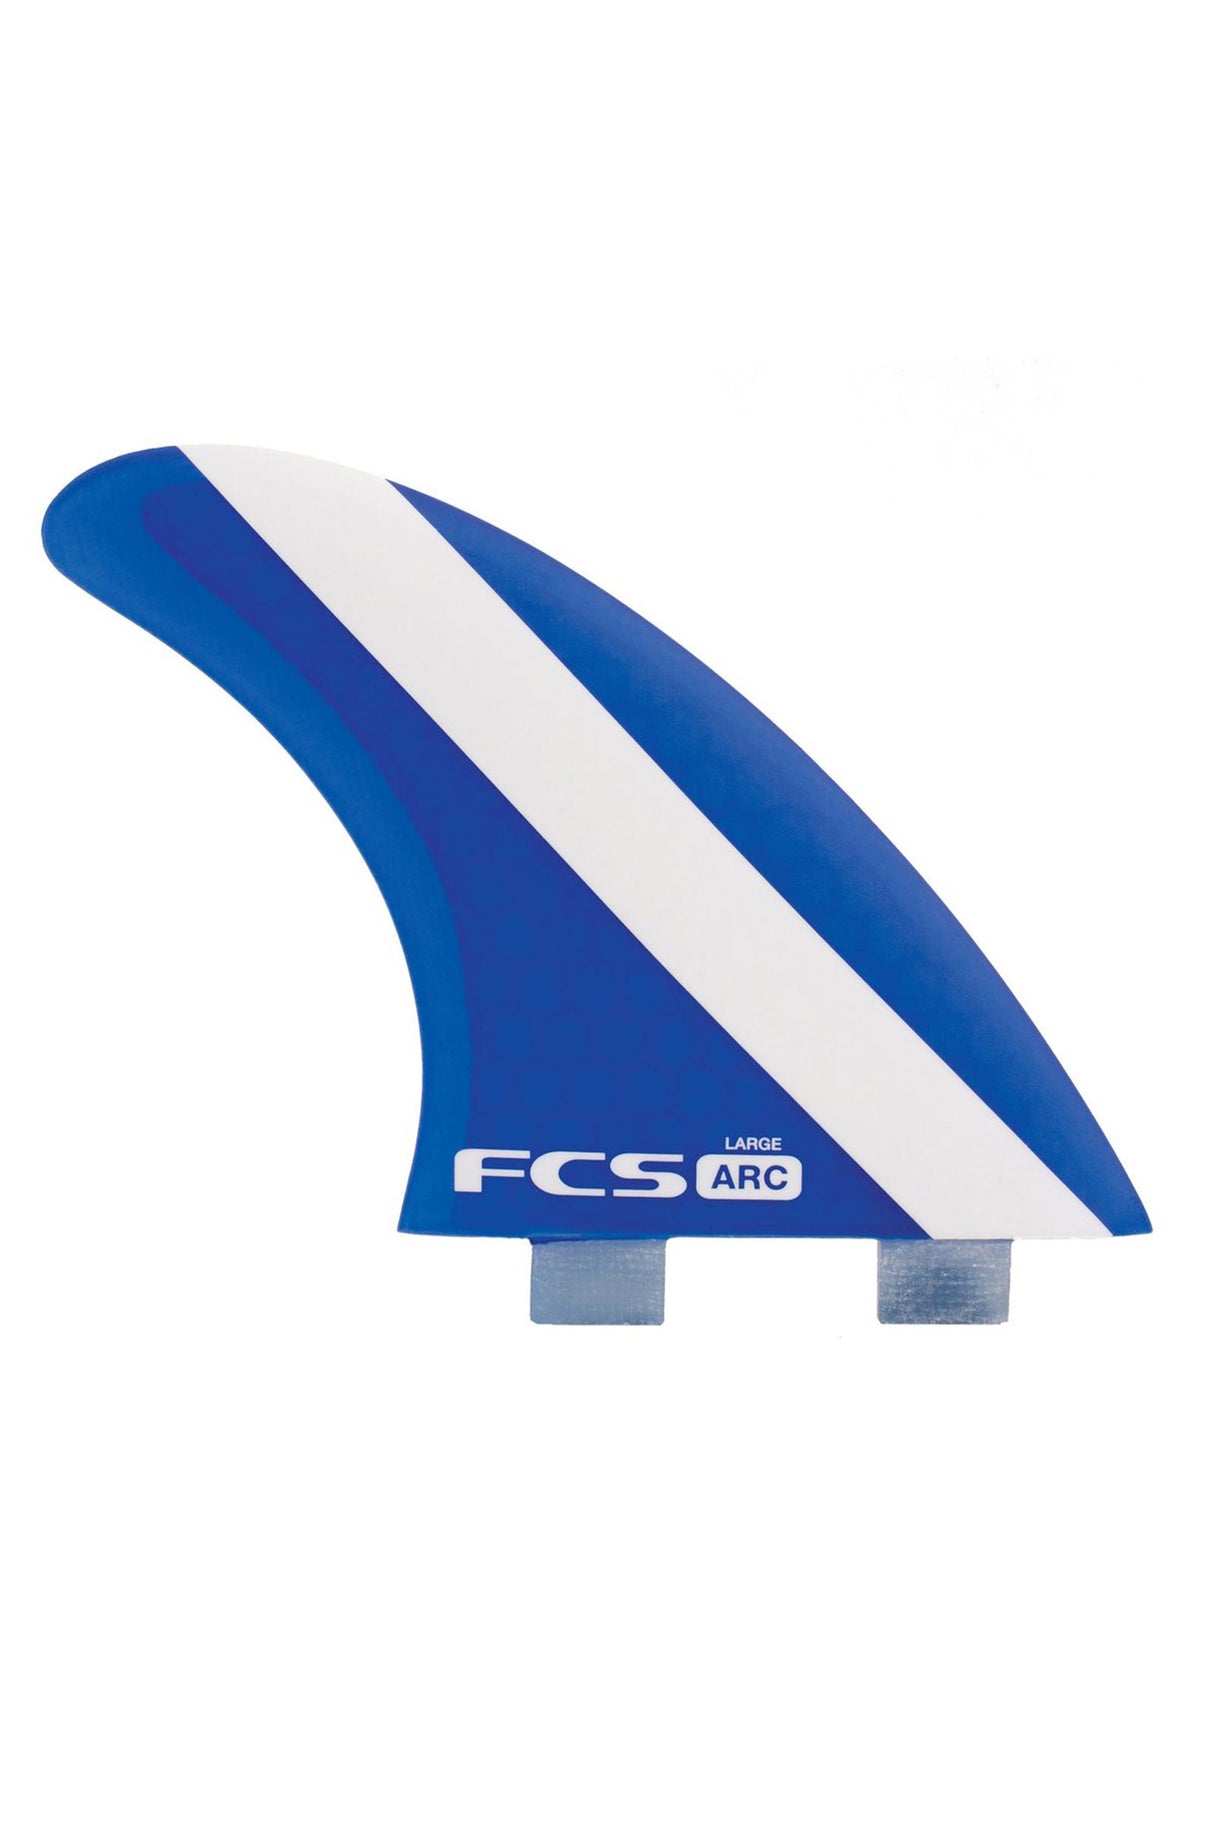 FCS Arc PC Tri Set - Large